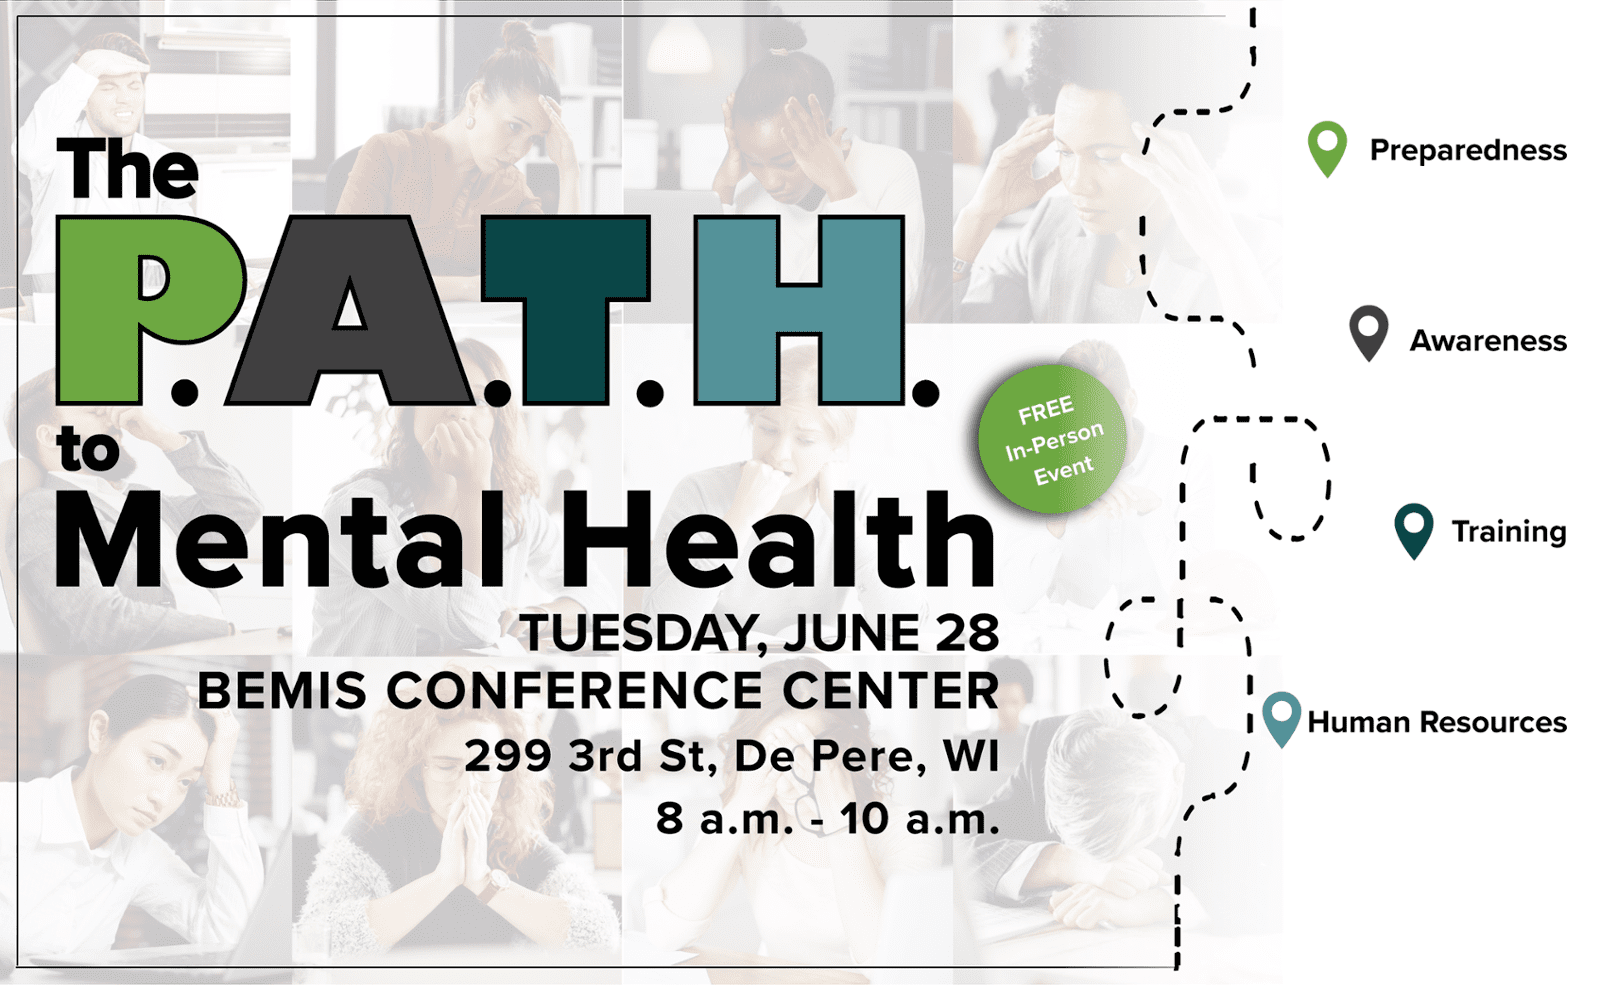 The P.A.T.H. to Mental Health Seminar